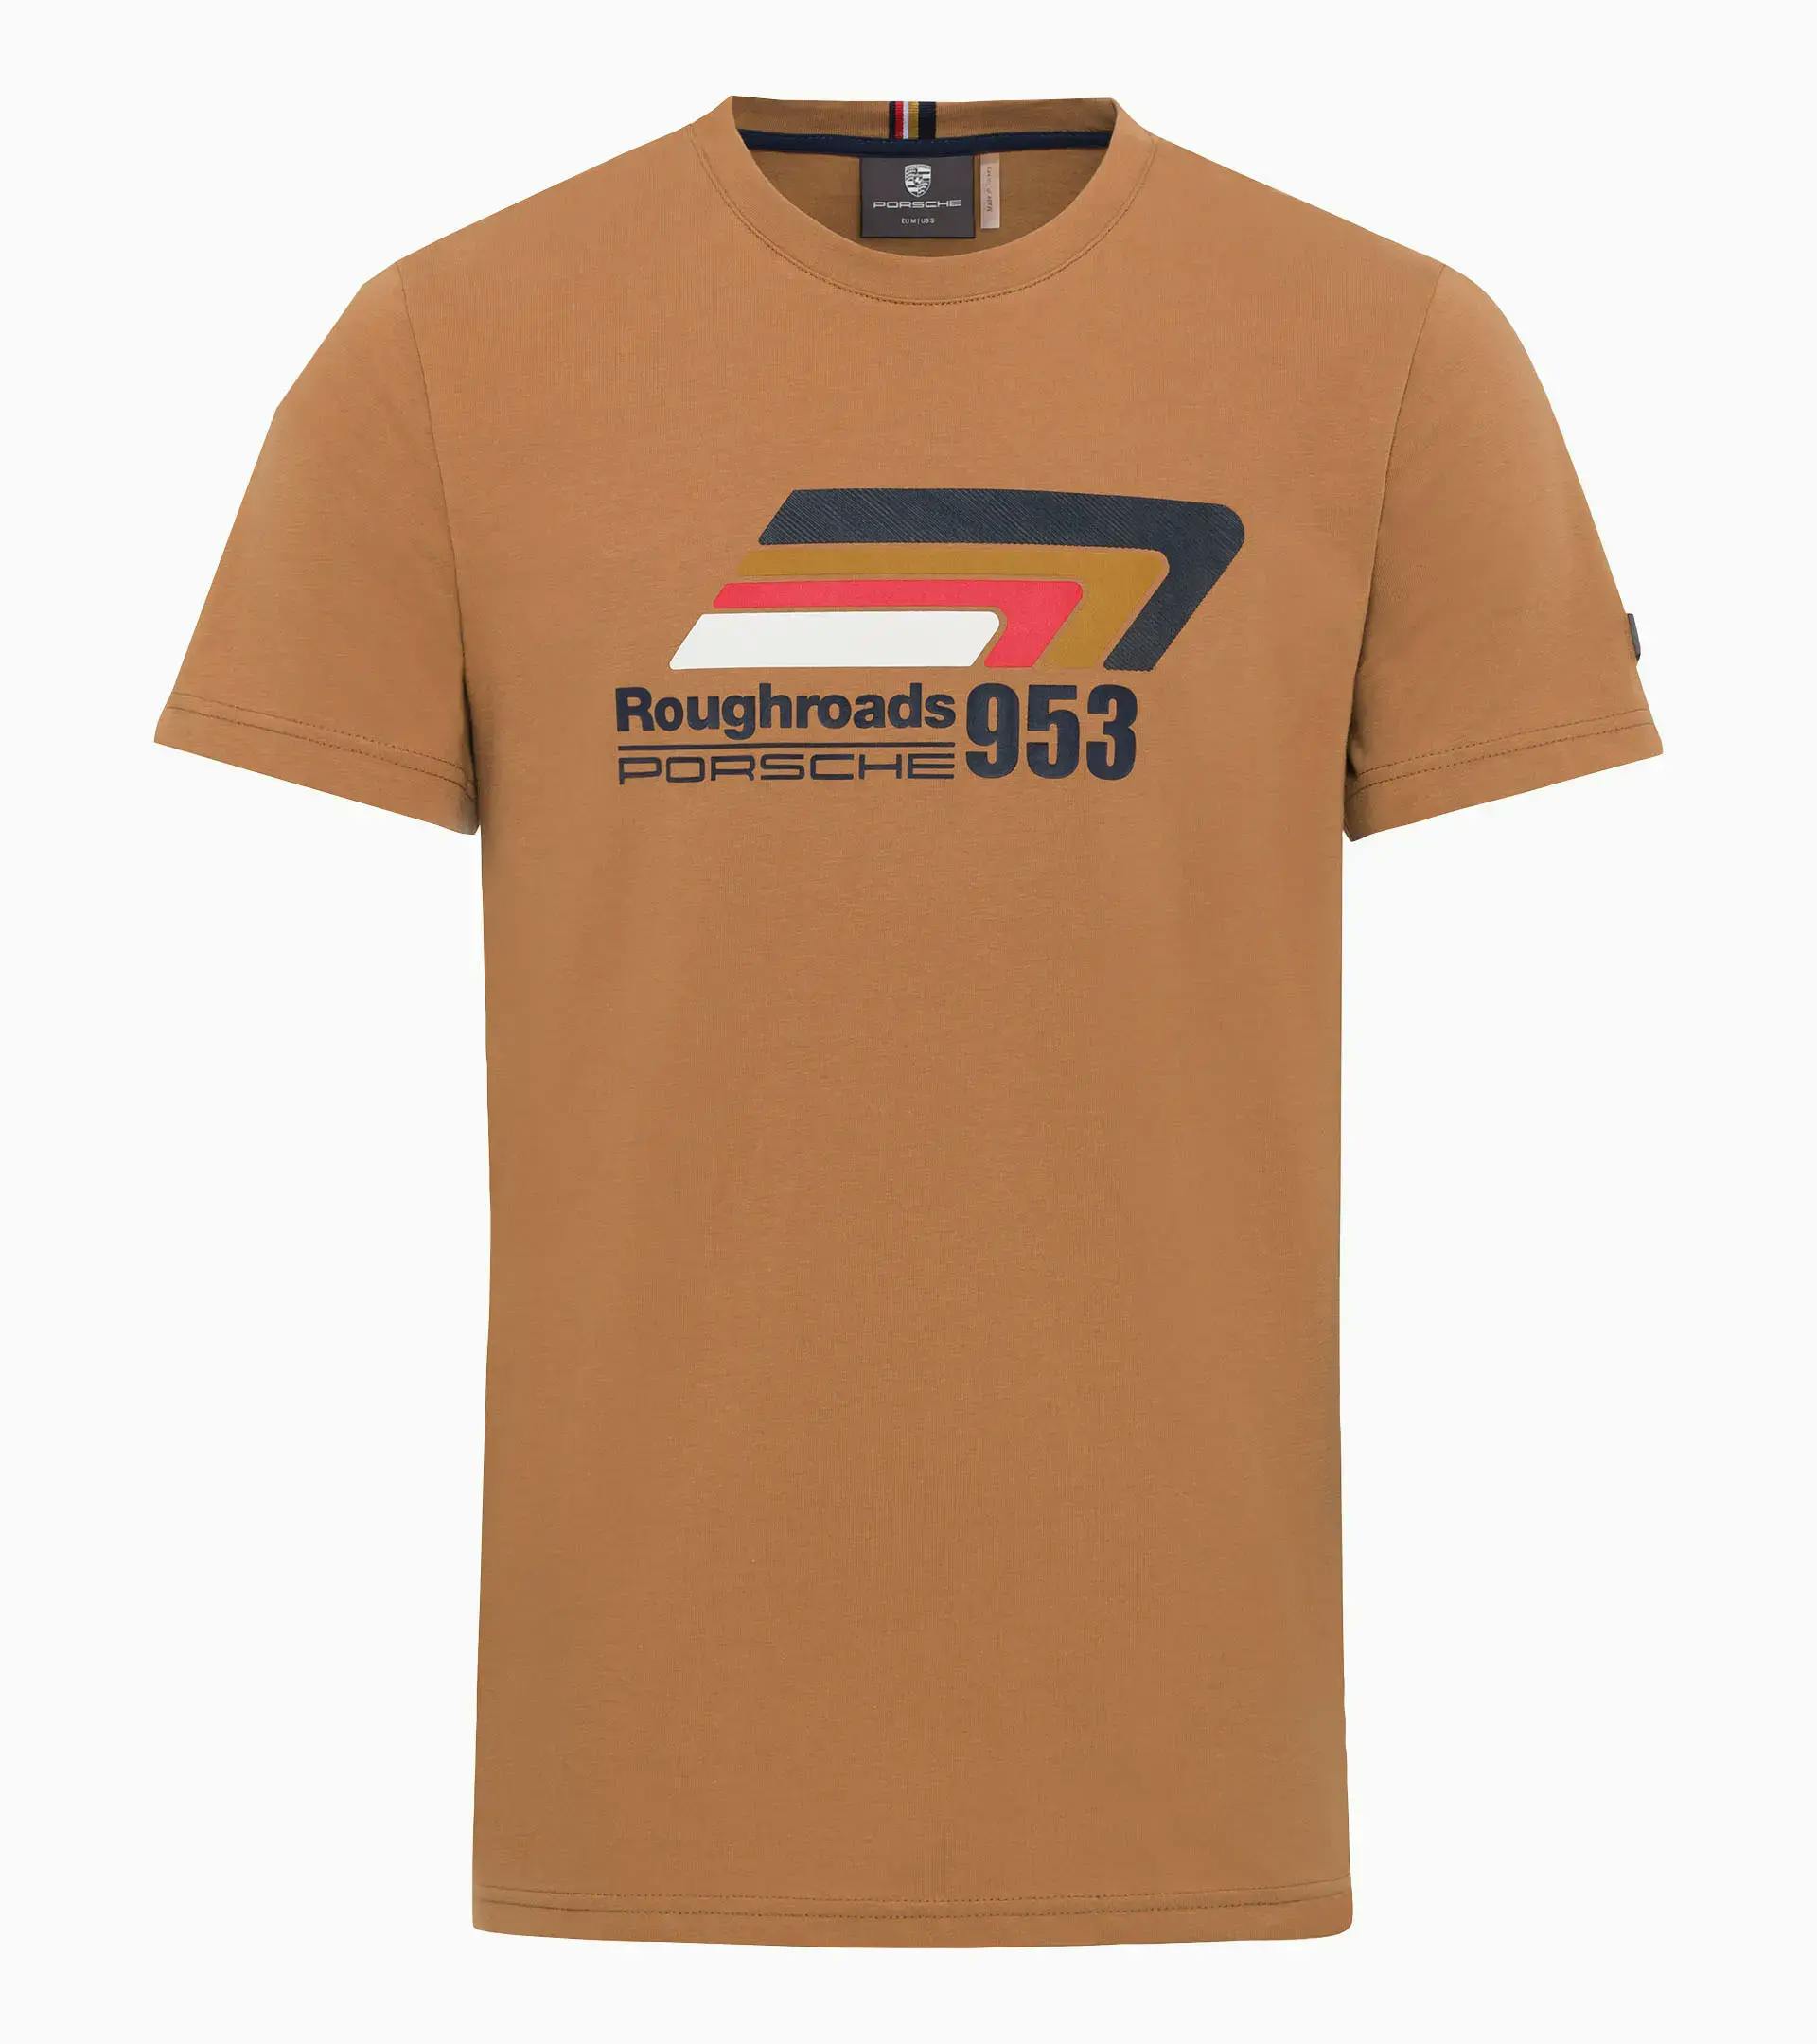 Camiseta unisex – Roughroads